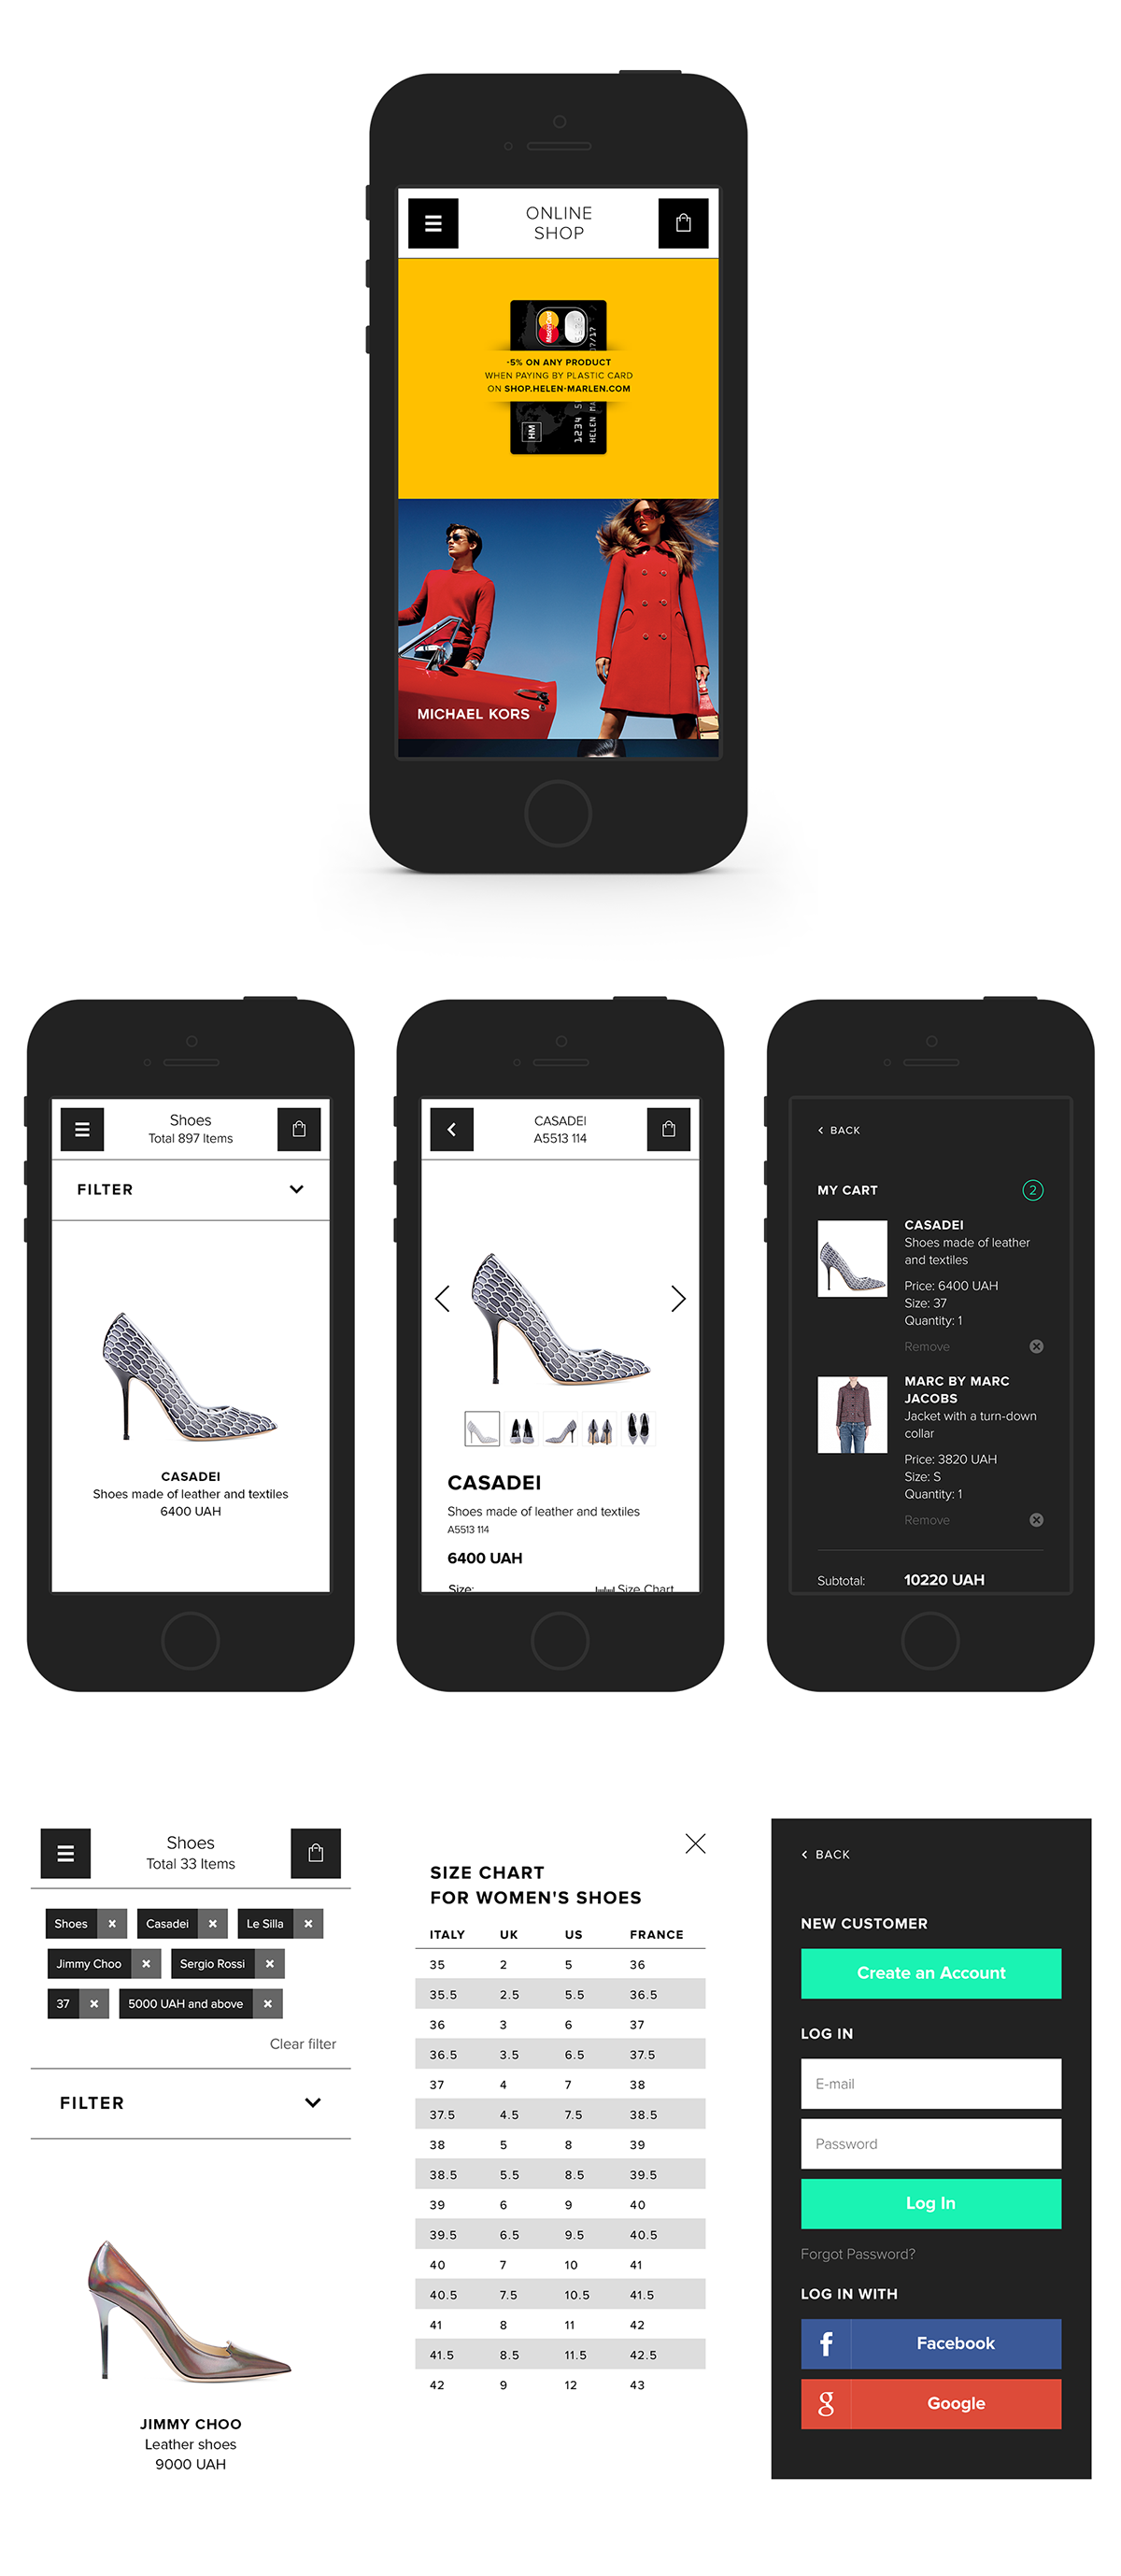 Adobe Portfolio web-design helen marlen ukraine kiev boutique online store side menu premium clothes shoes Accessory shop Adaptive e-commerce posh